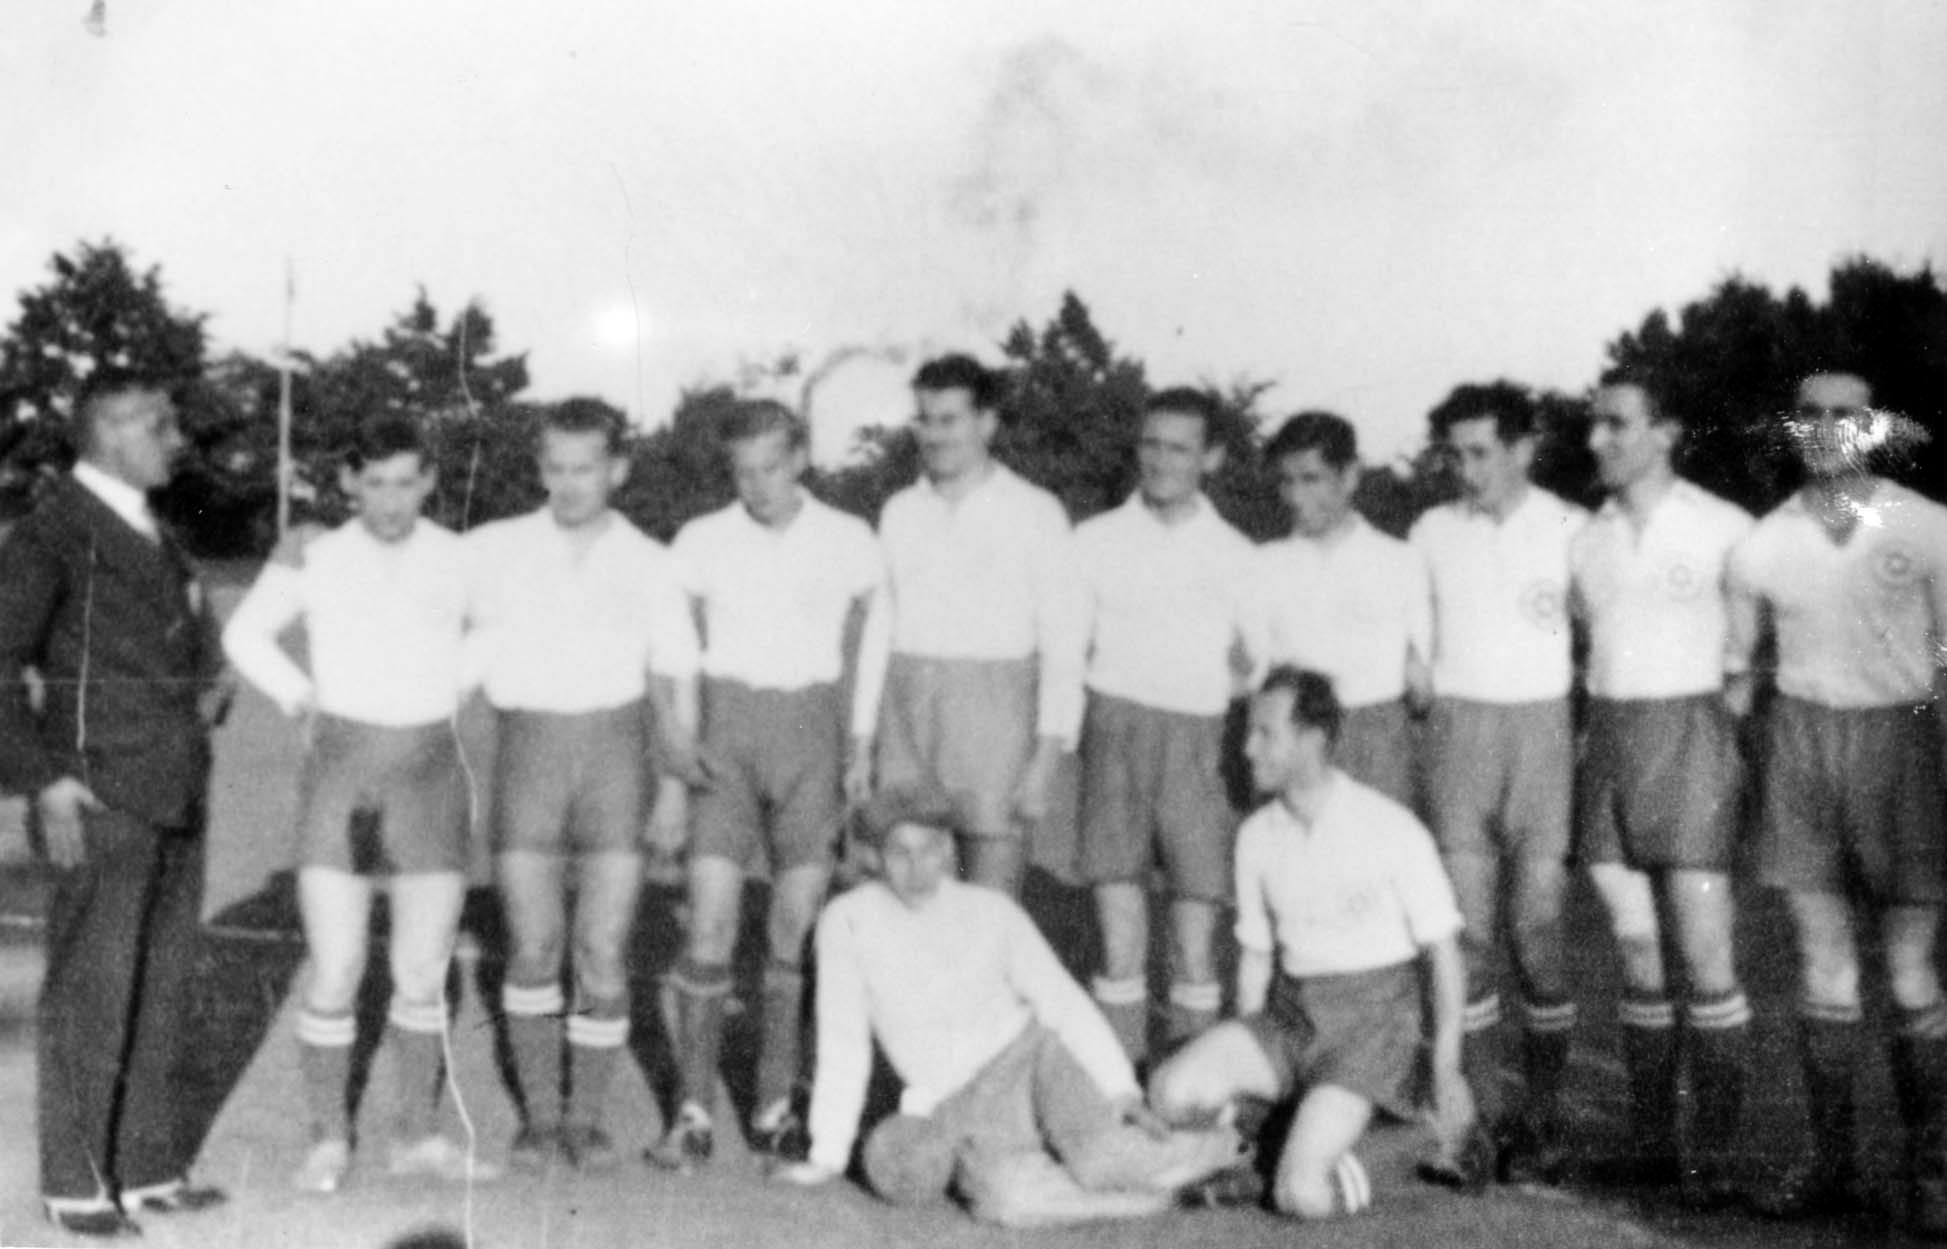 גרמניה, ברלין, נבחרת כדור היד של קבוצת "בר-כוכבא", סוף שנות ה-20 או תחילת שנות ה-30